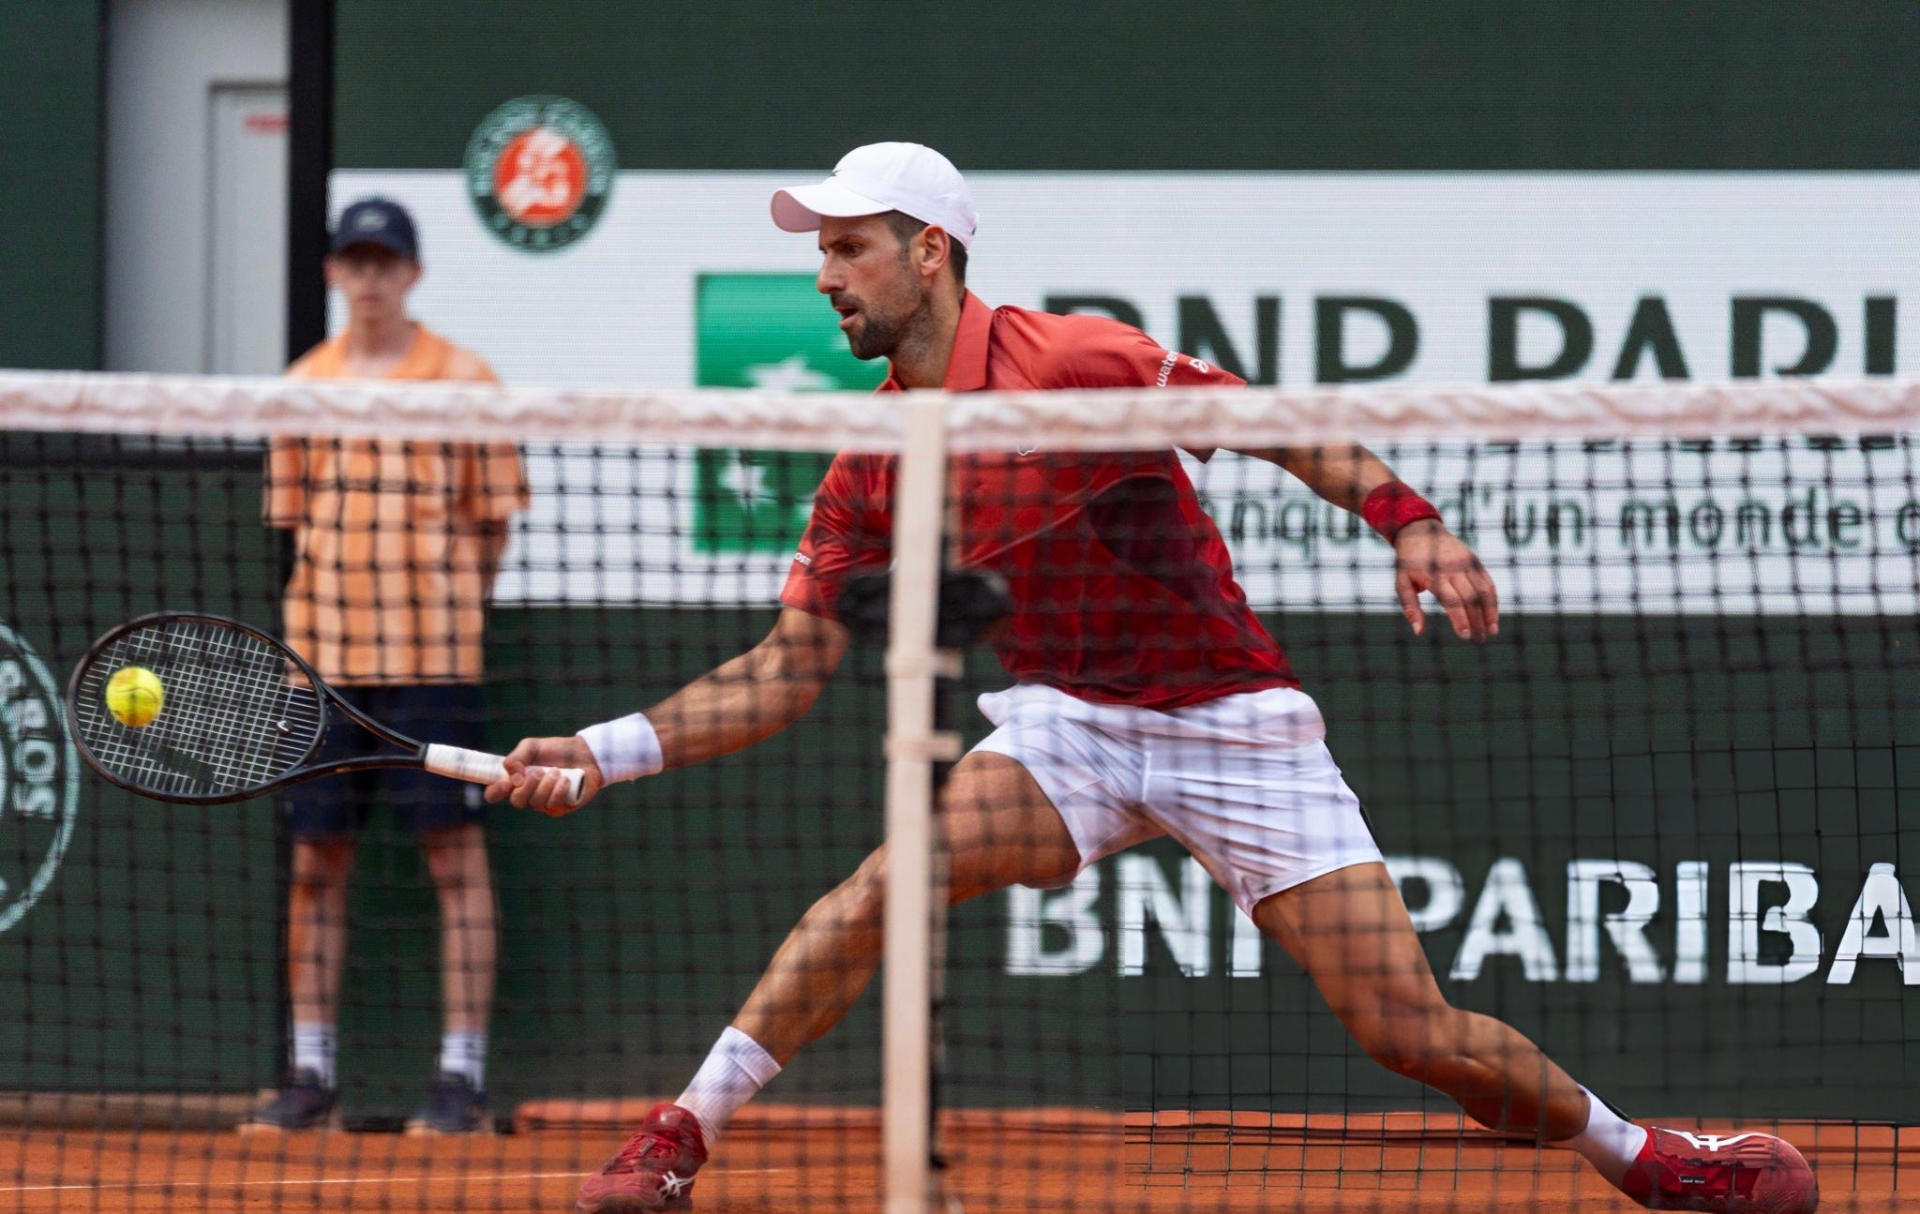 CHÍNH THỨC: Novak Djokovic bỏ Roland Garros, đánh mất ngôi số 1 thế giới 475271